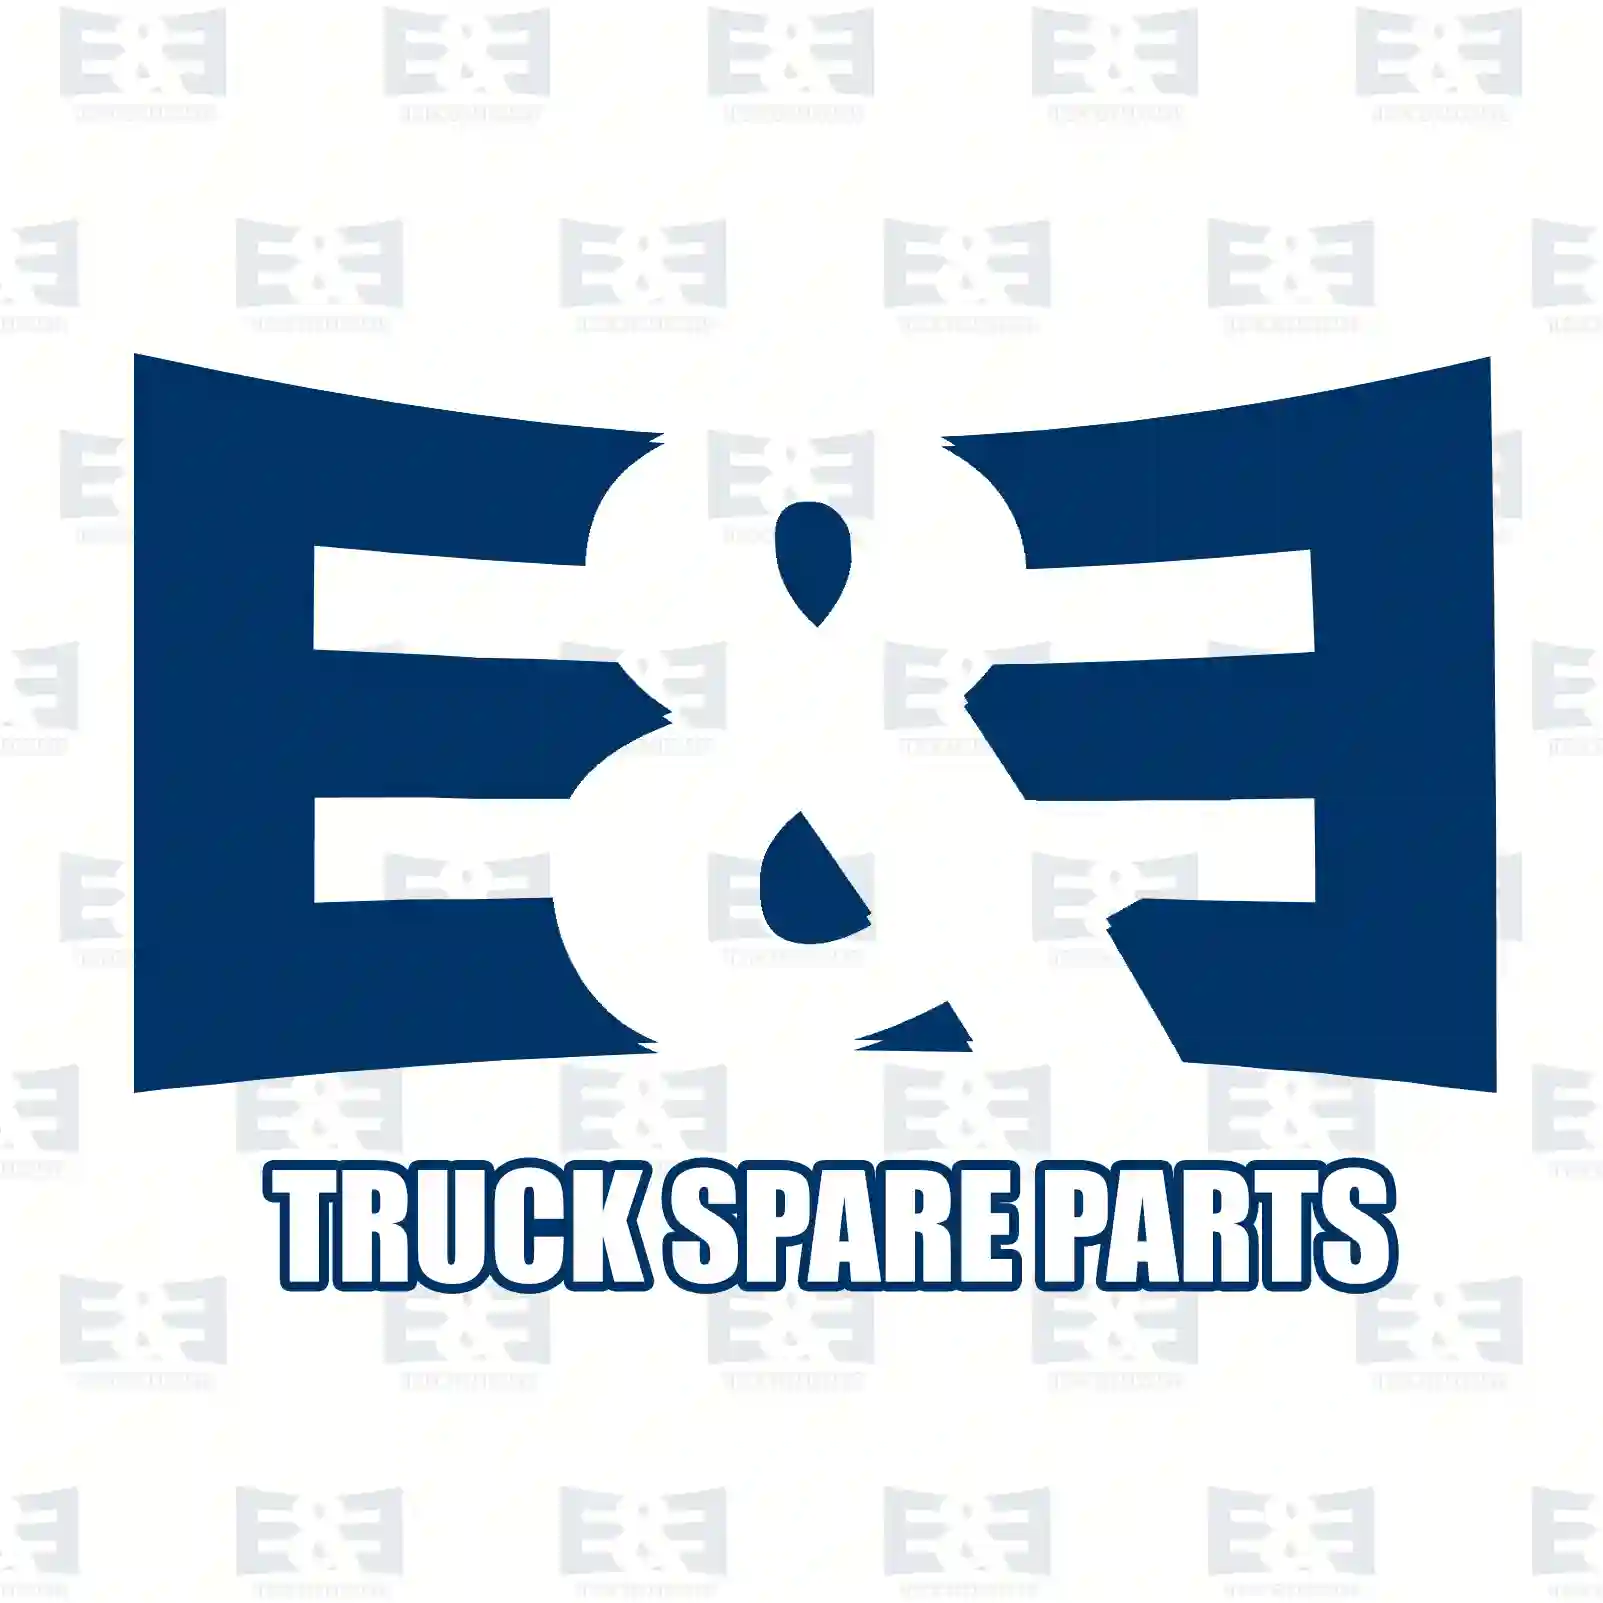 Nut, 2E2285987, 910113024000, ZG41323-0008, , ||  2E2285987 E&E Truck Spare Parts | Truck Spare Parts, Auotomotive Spare Parts Nut, 2E2285987, 910113024000, ZG41323-0008, , ||  2E2285987 E&E Truck Spare Parts | Truck Spare Parts, Auotomotive Spare Parts